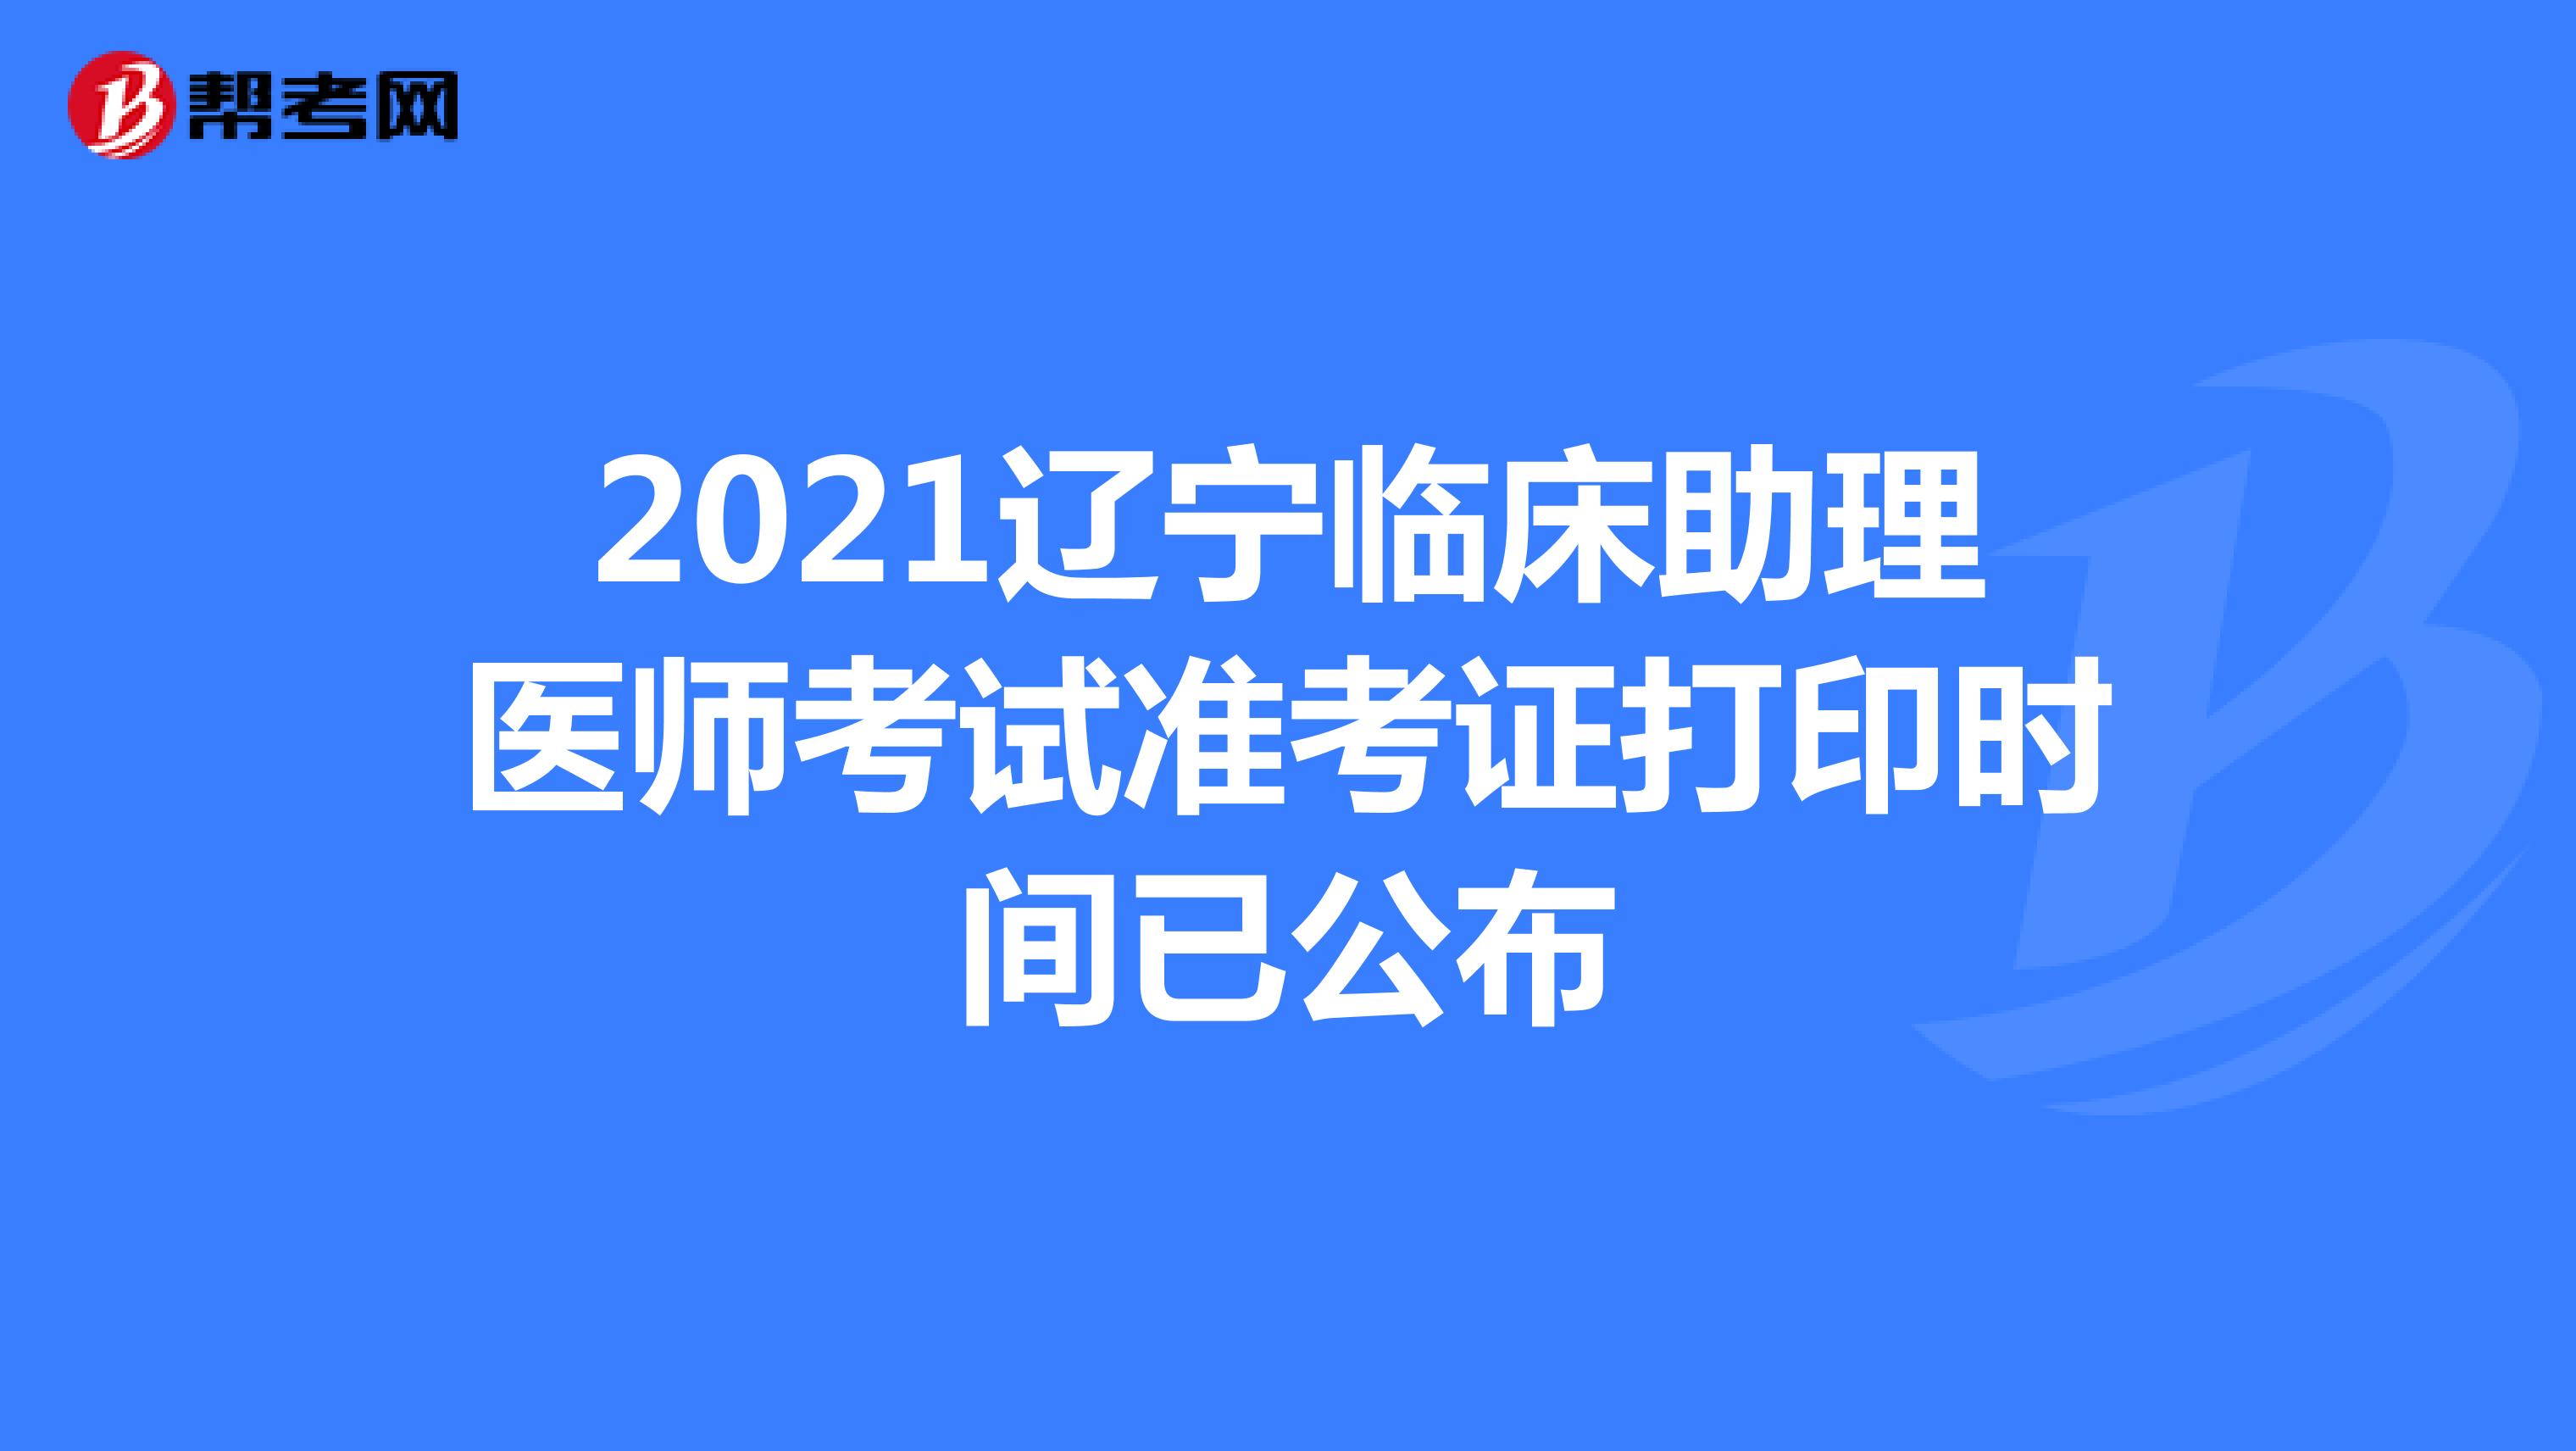 2021辽宁临床助理医师考试准考证打印时间已公布